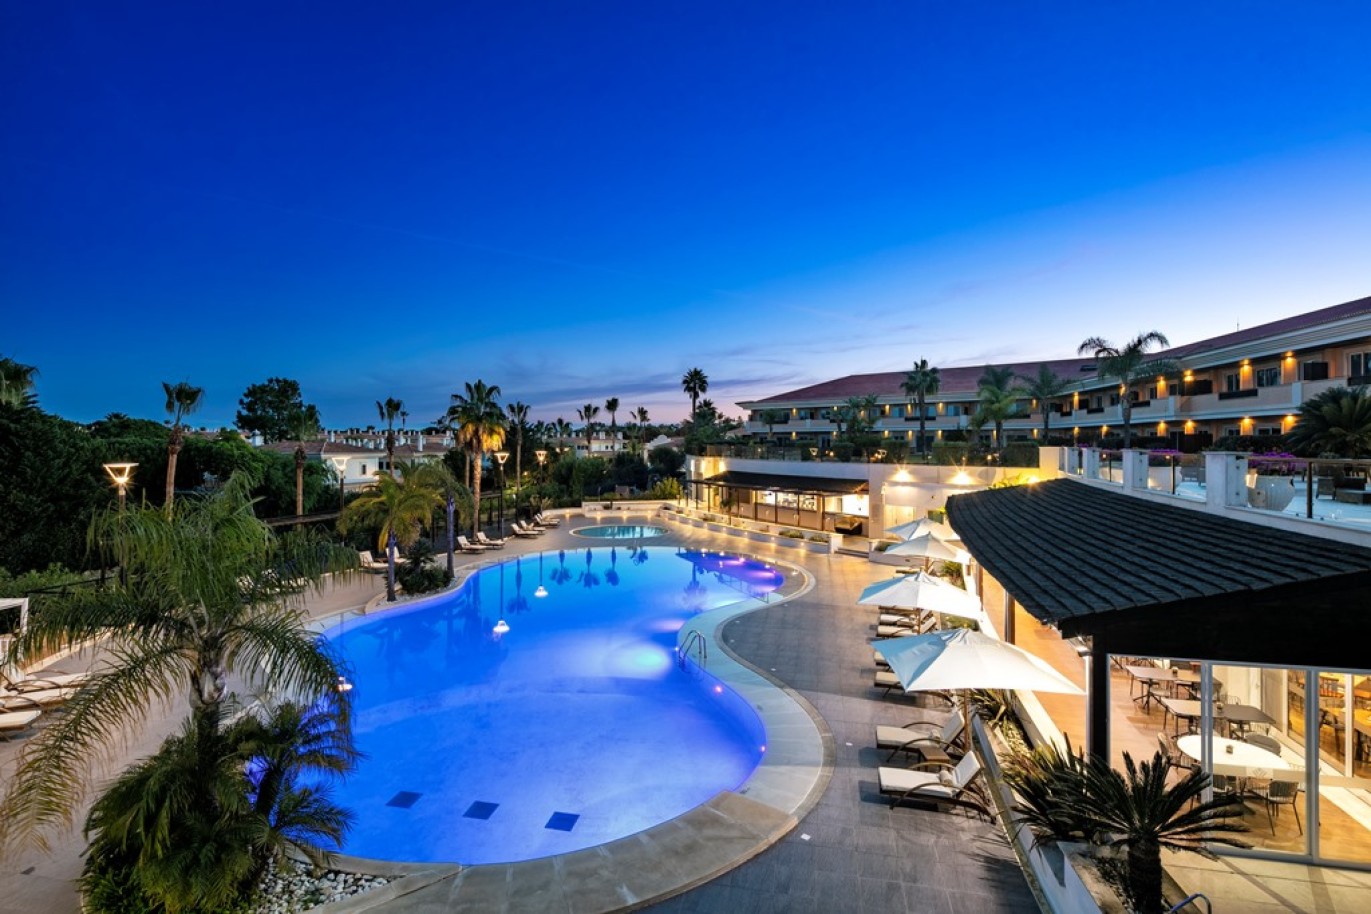 Apartamento, 2 quartos, piscina, para venda na Quinta do Lago, Algarve_263410